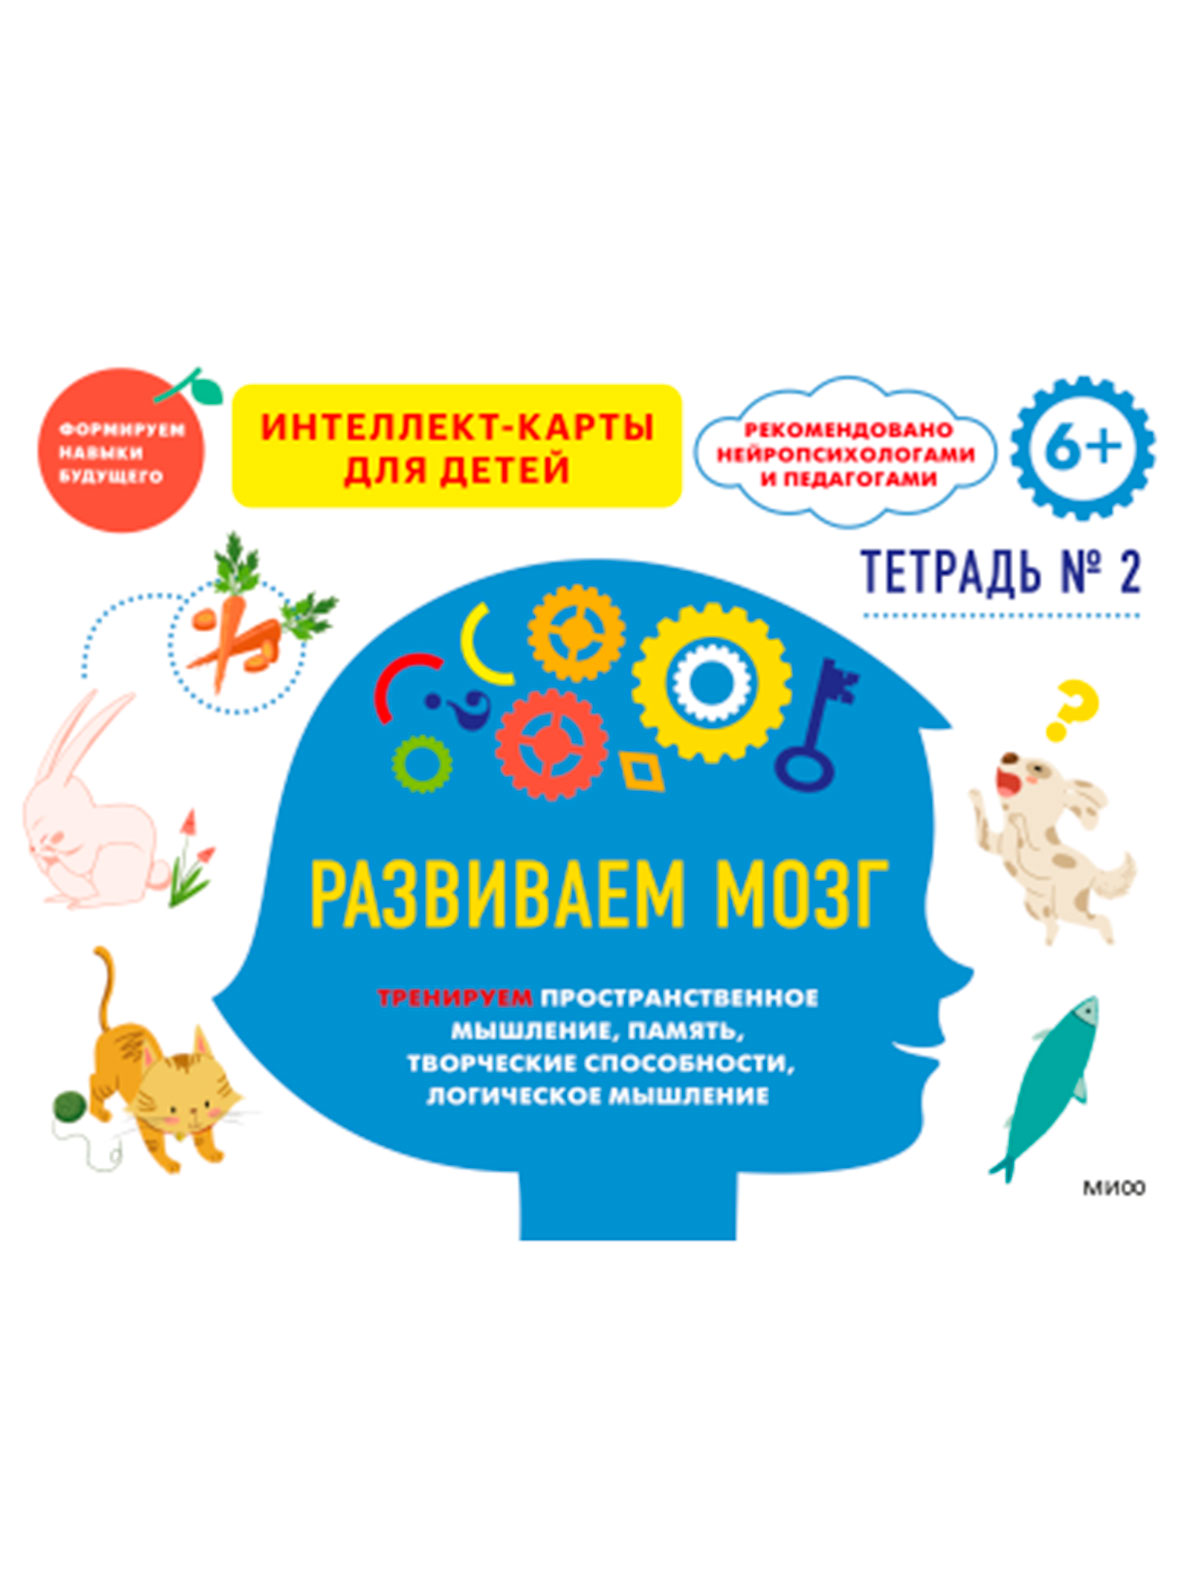 Книга МИФ развиваем мозг тетр 2 тренируем пространственное мышление память творческие способности логическое мышление